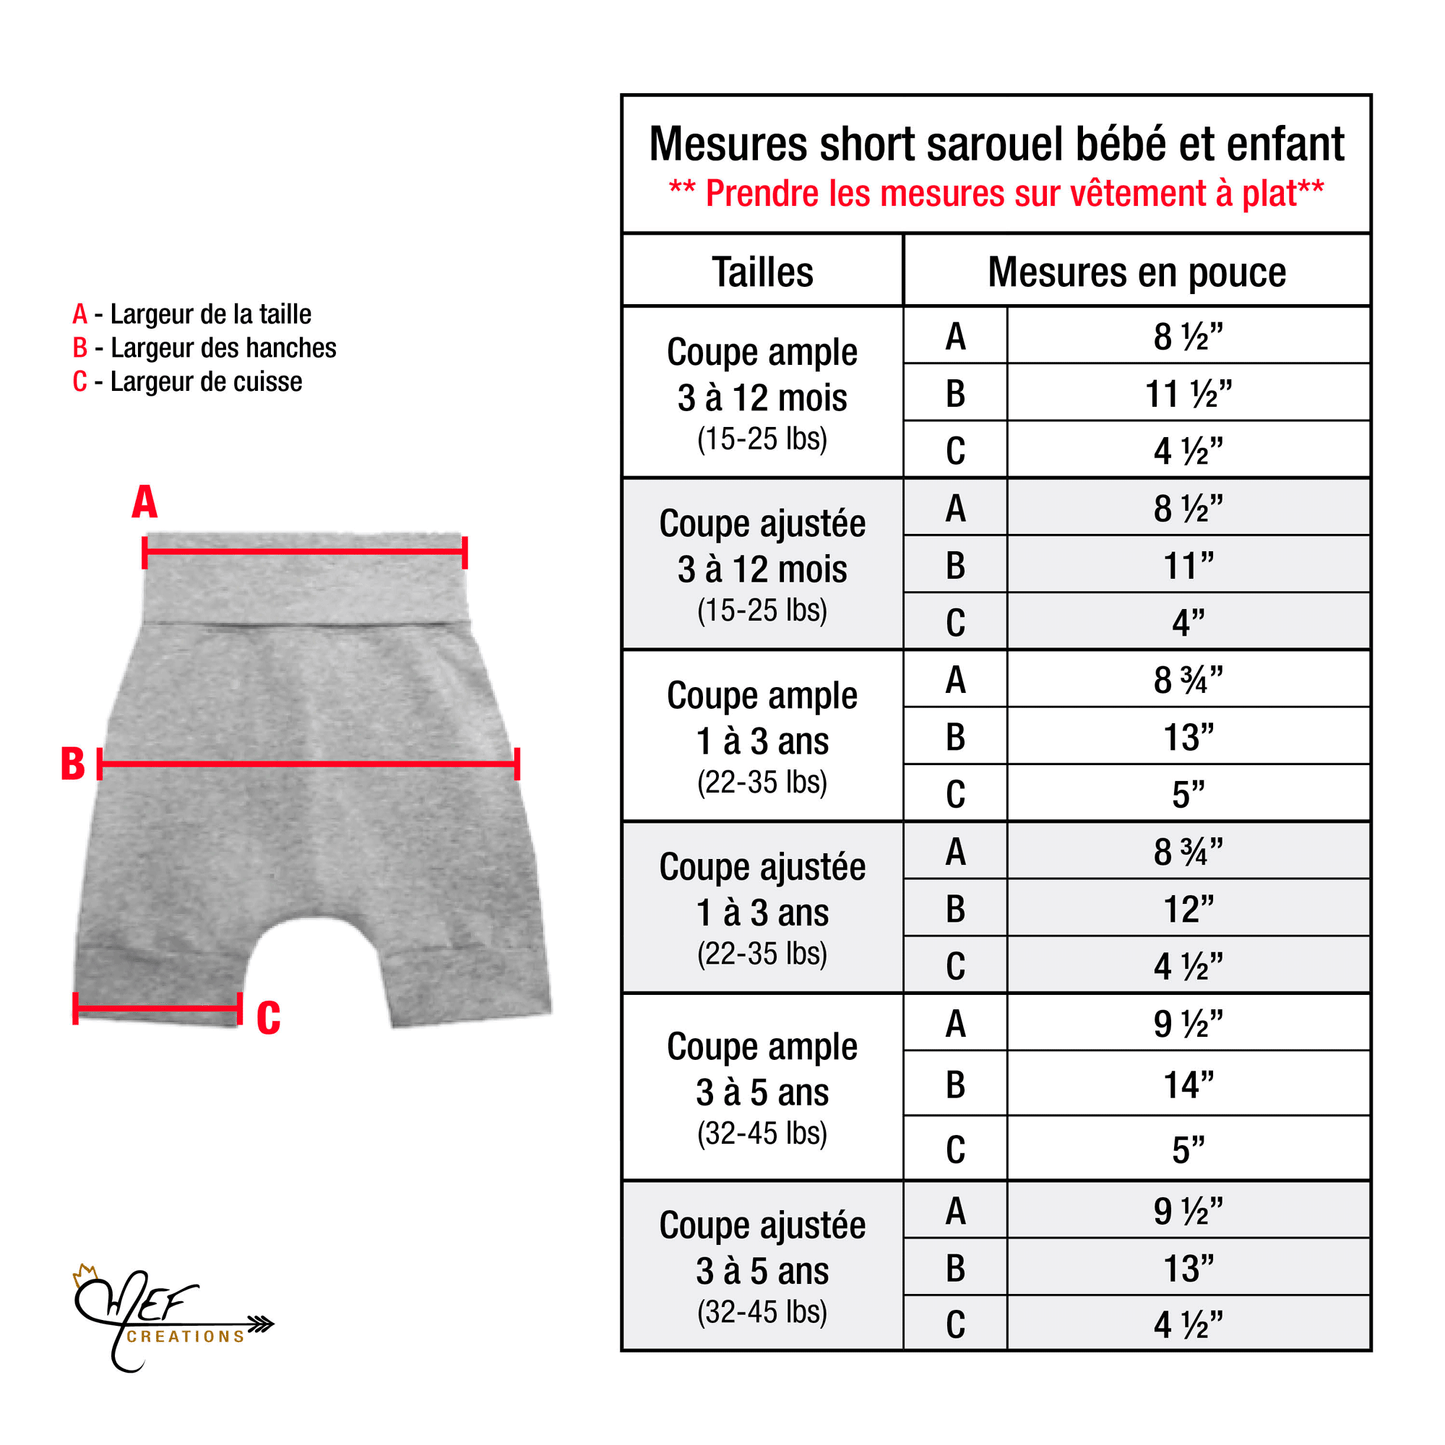 Short licorne exclusivité MEF, coupe du short aux choix : short sarouel ample, short sarouel ajusté ou short legging